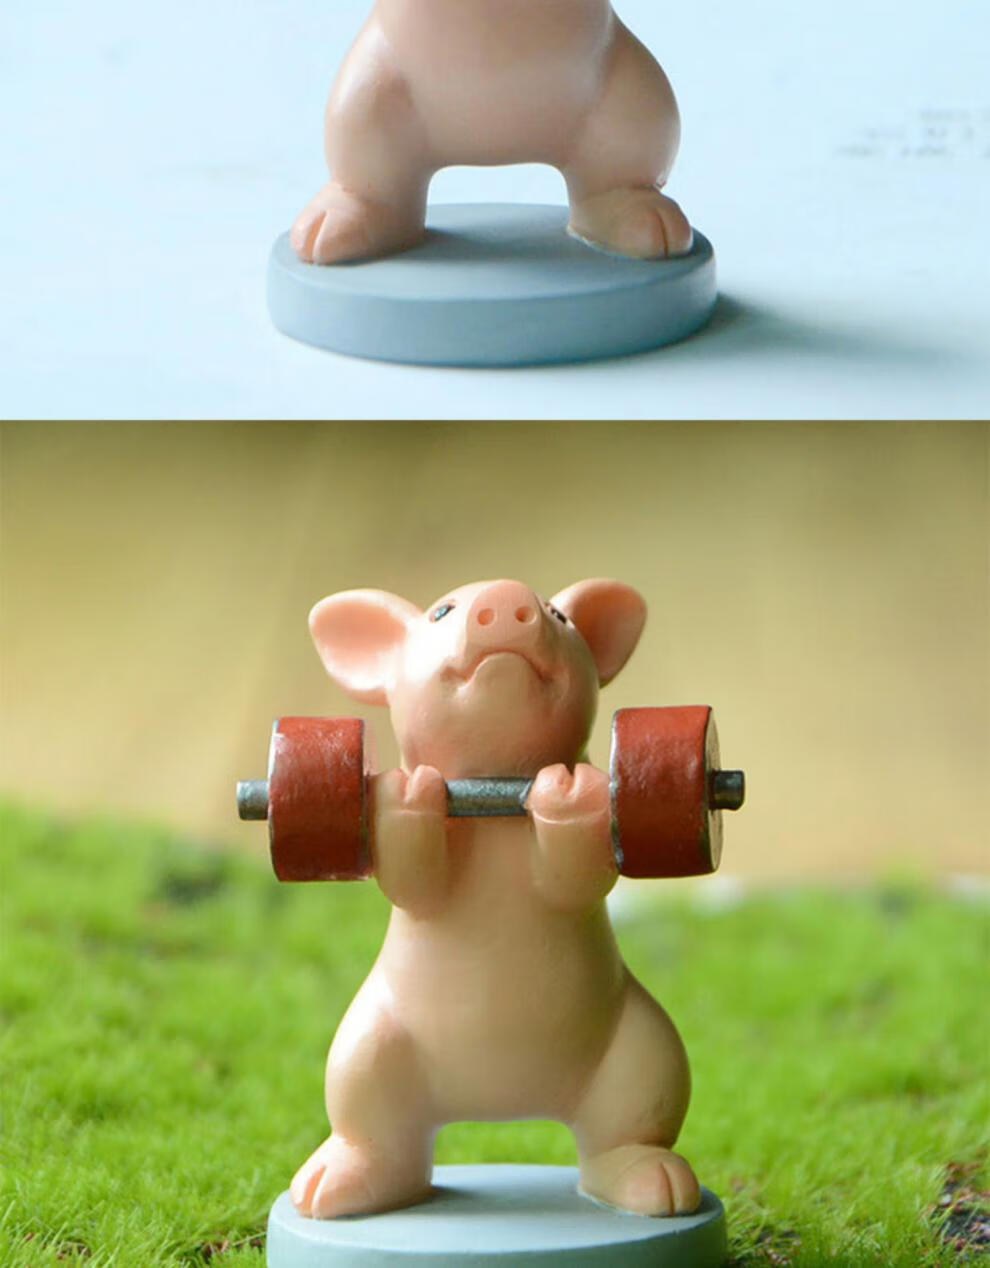 创意运动小猪摆件动物篮球健身可爱公仔装饰品送男女生日礼物 举哑铃